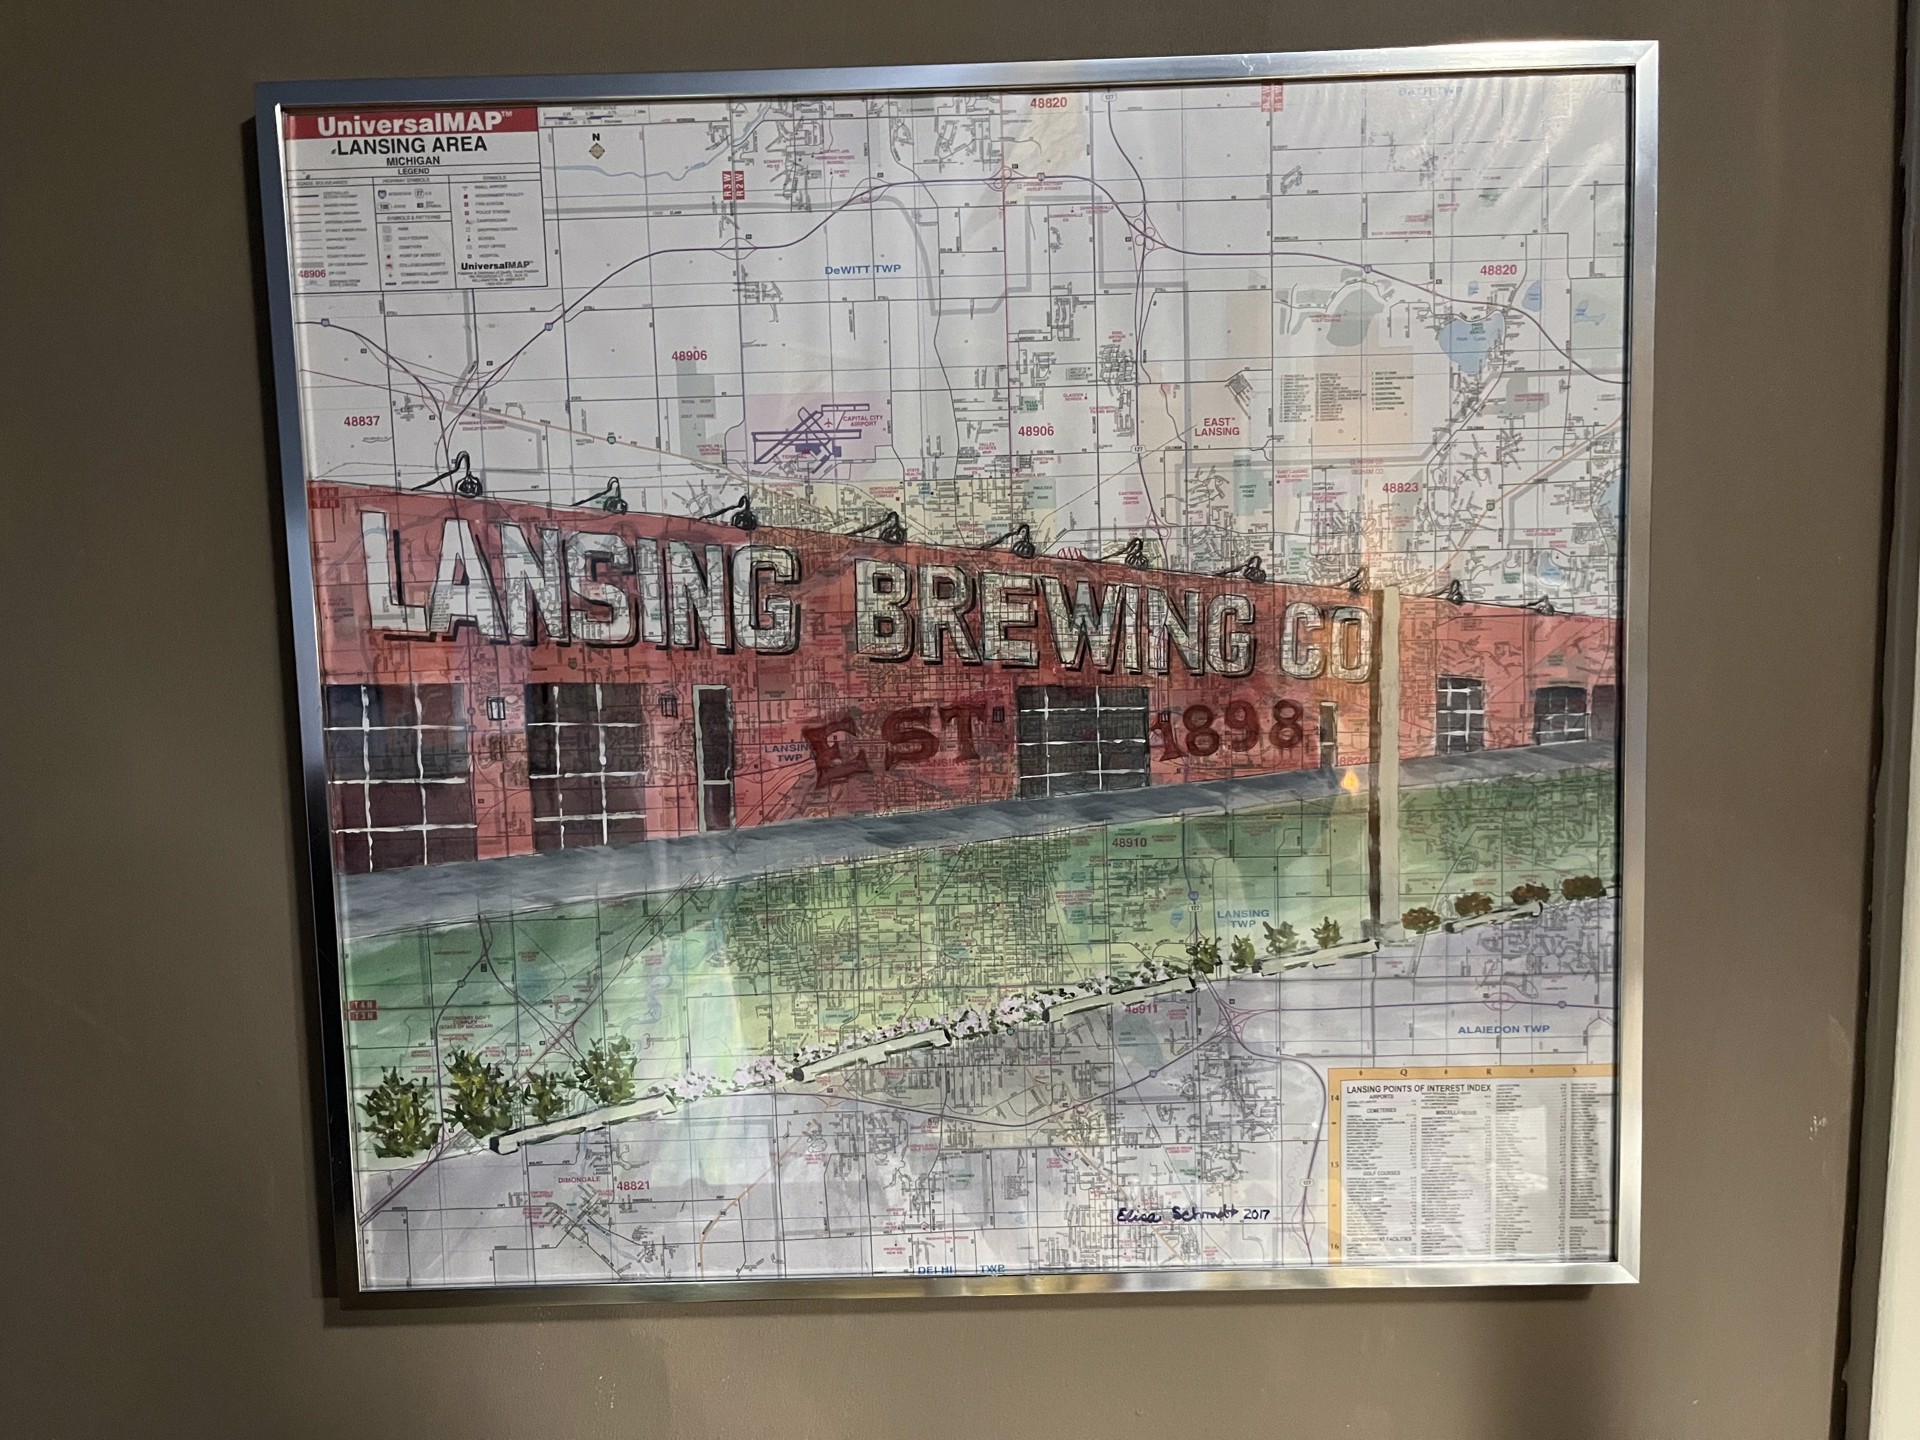 Lansing Brewing Co. by Elisa Baron Schmidt